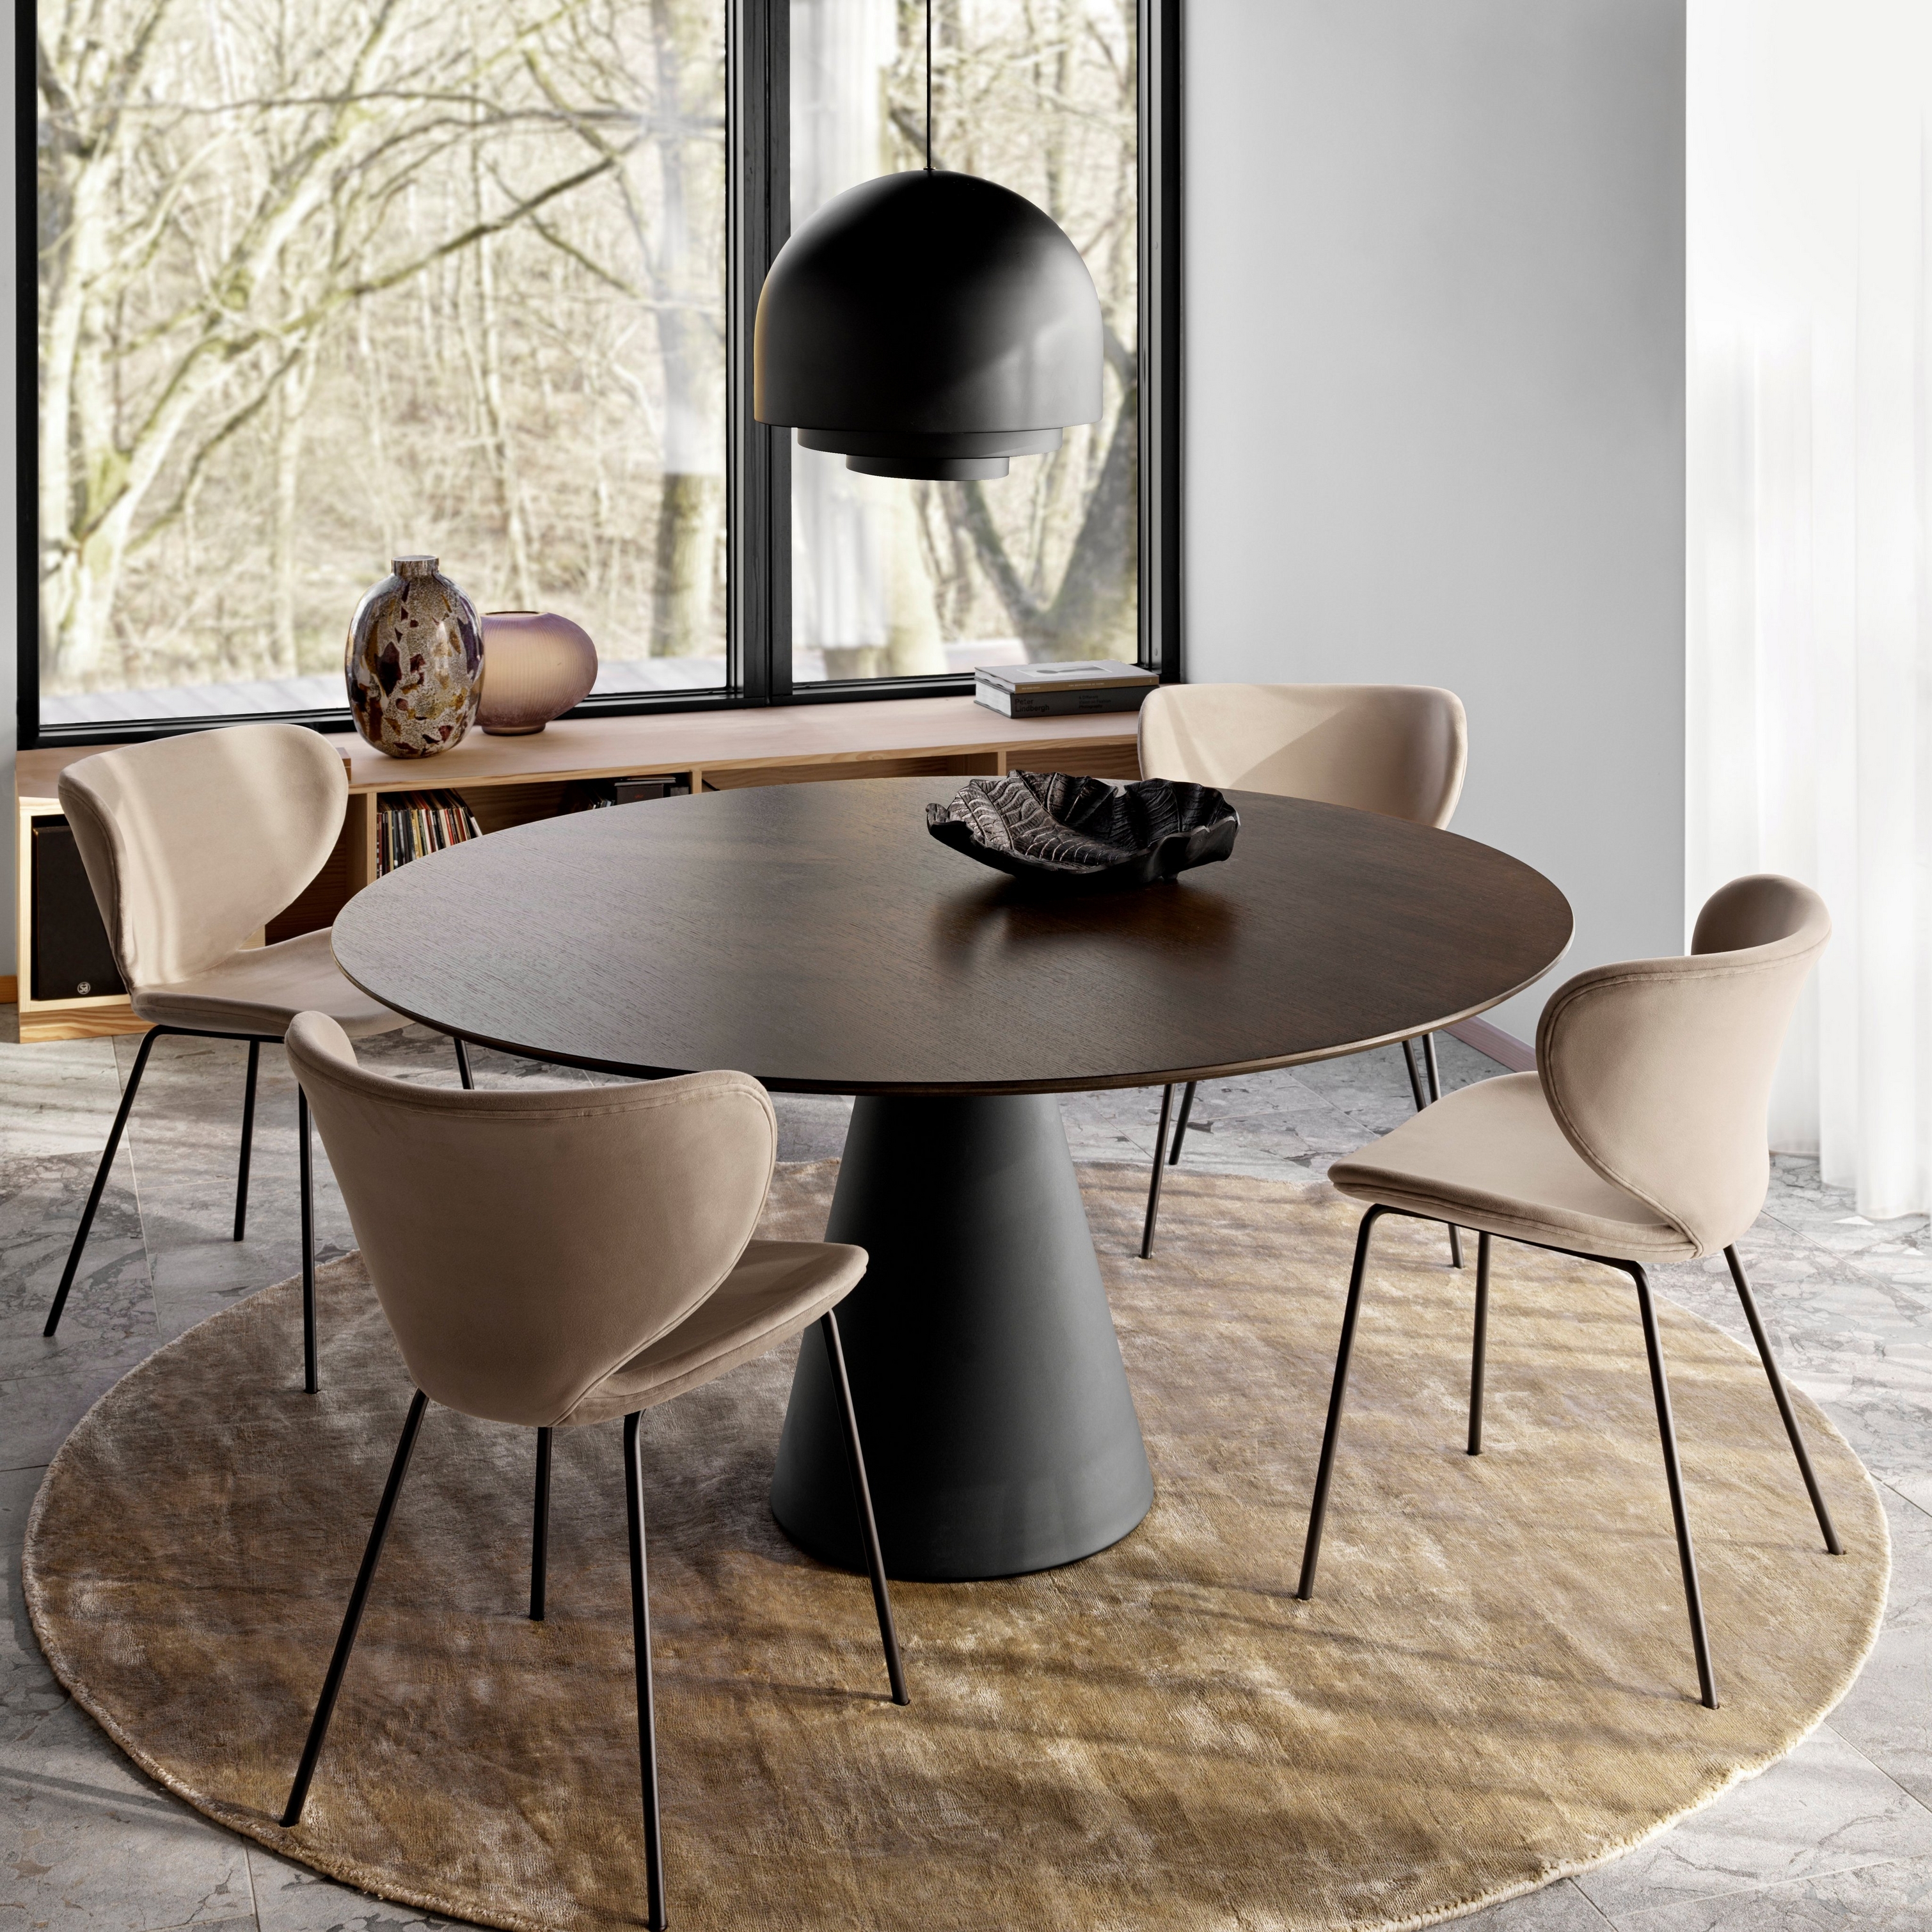 Rundt spisebord med brune stoler, stor pendellampe, på et rundt teppe nær vinduer fra gulv til tak.